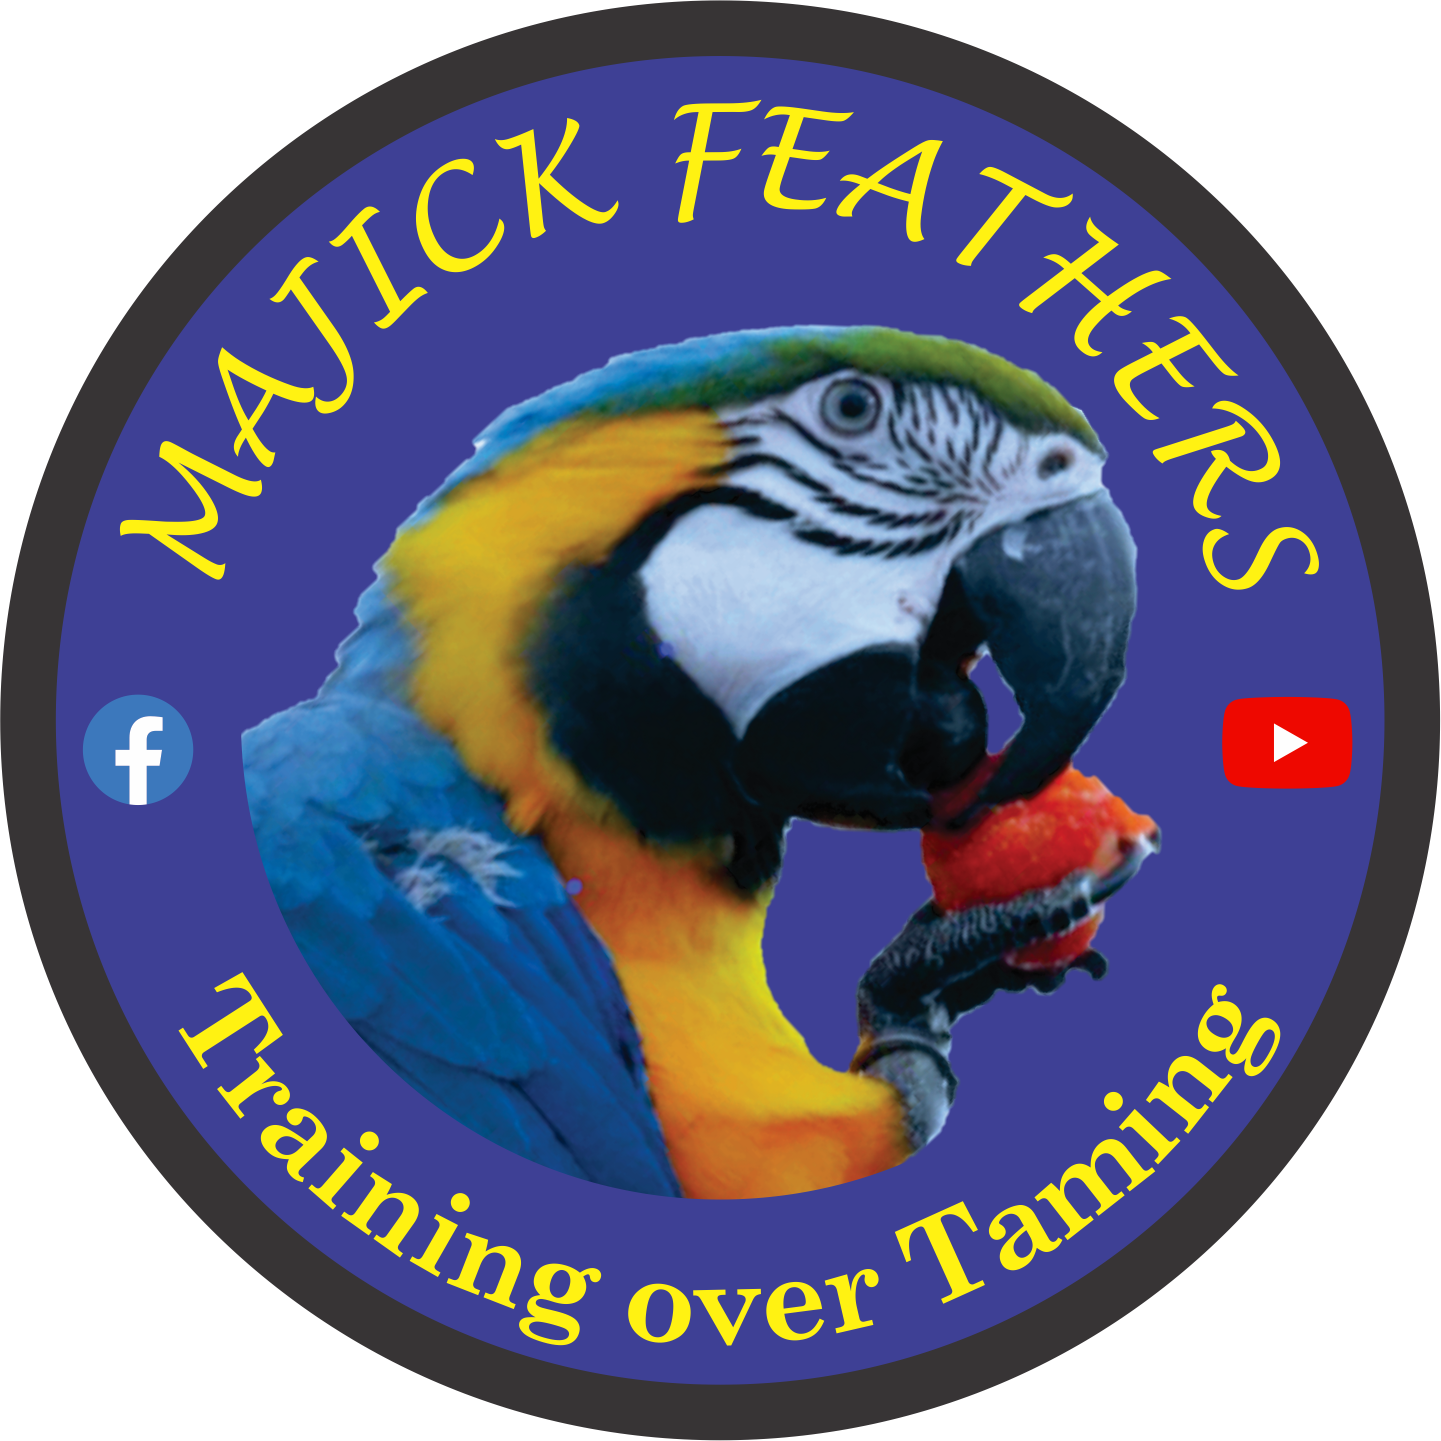 Majick Feathers logo